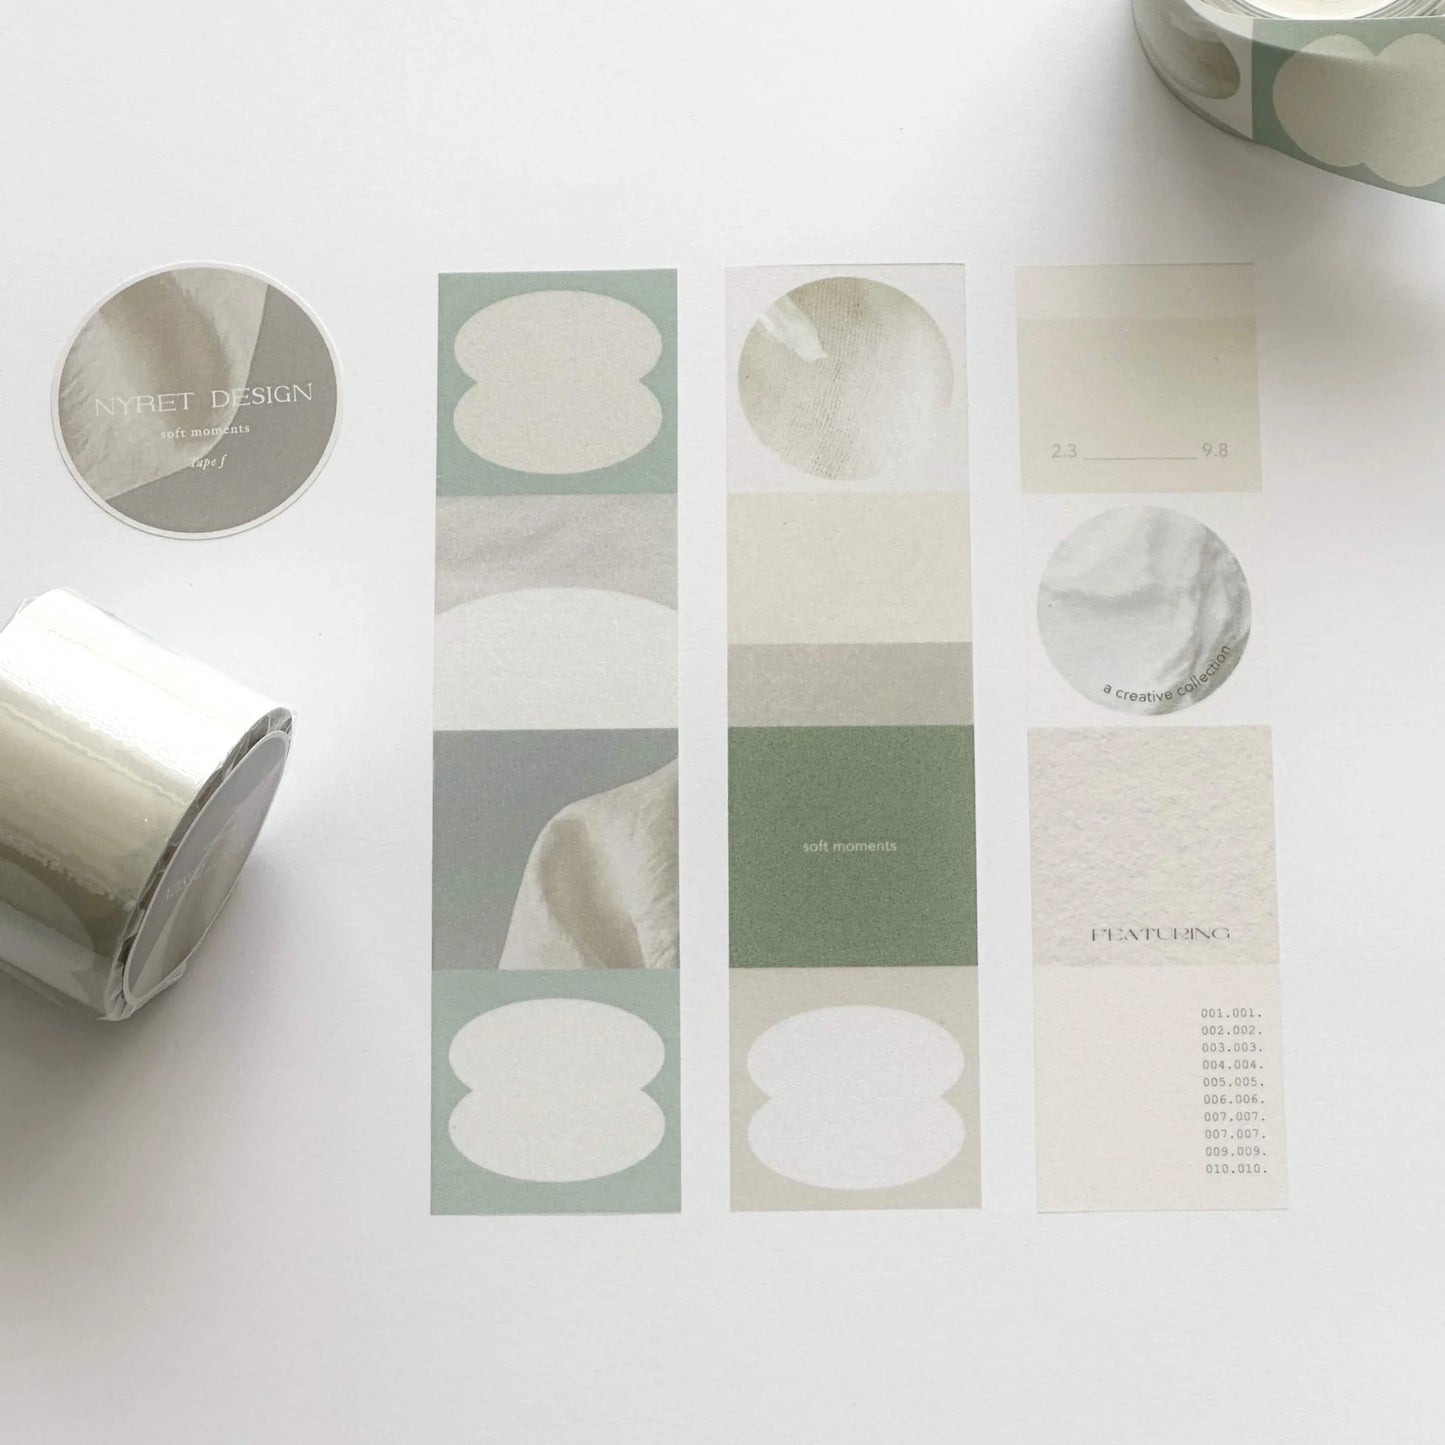 NYRET Design Planner Washi Tapes, 5 designs